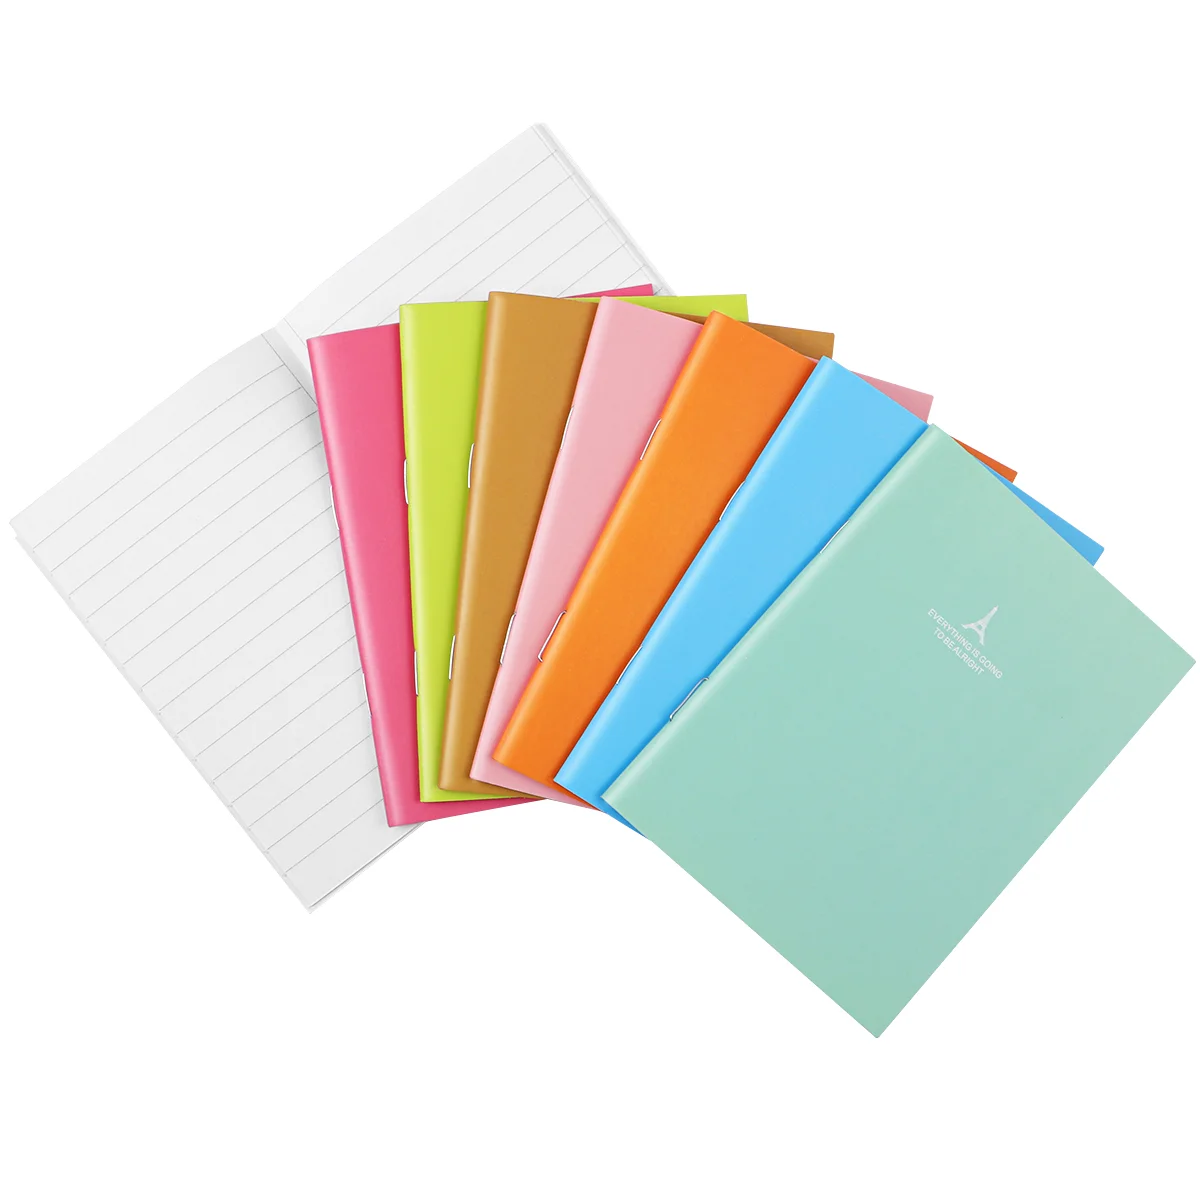 

Блокнот карамельных цветов, записная книжка, карманный блокнот для дома, дневника, офиса | 3 5x5